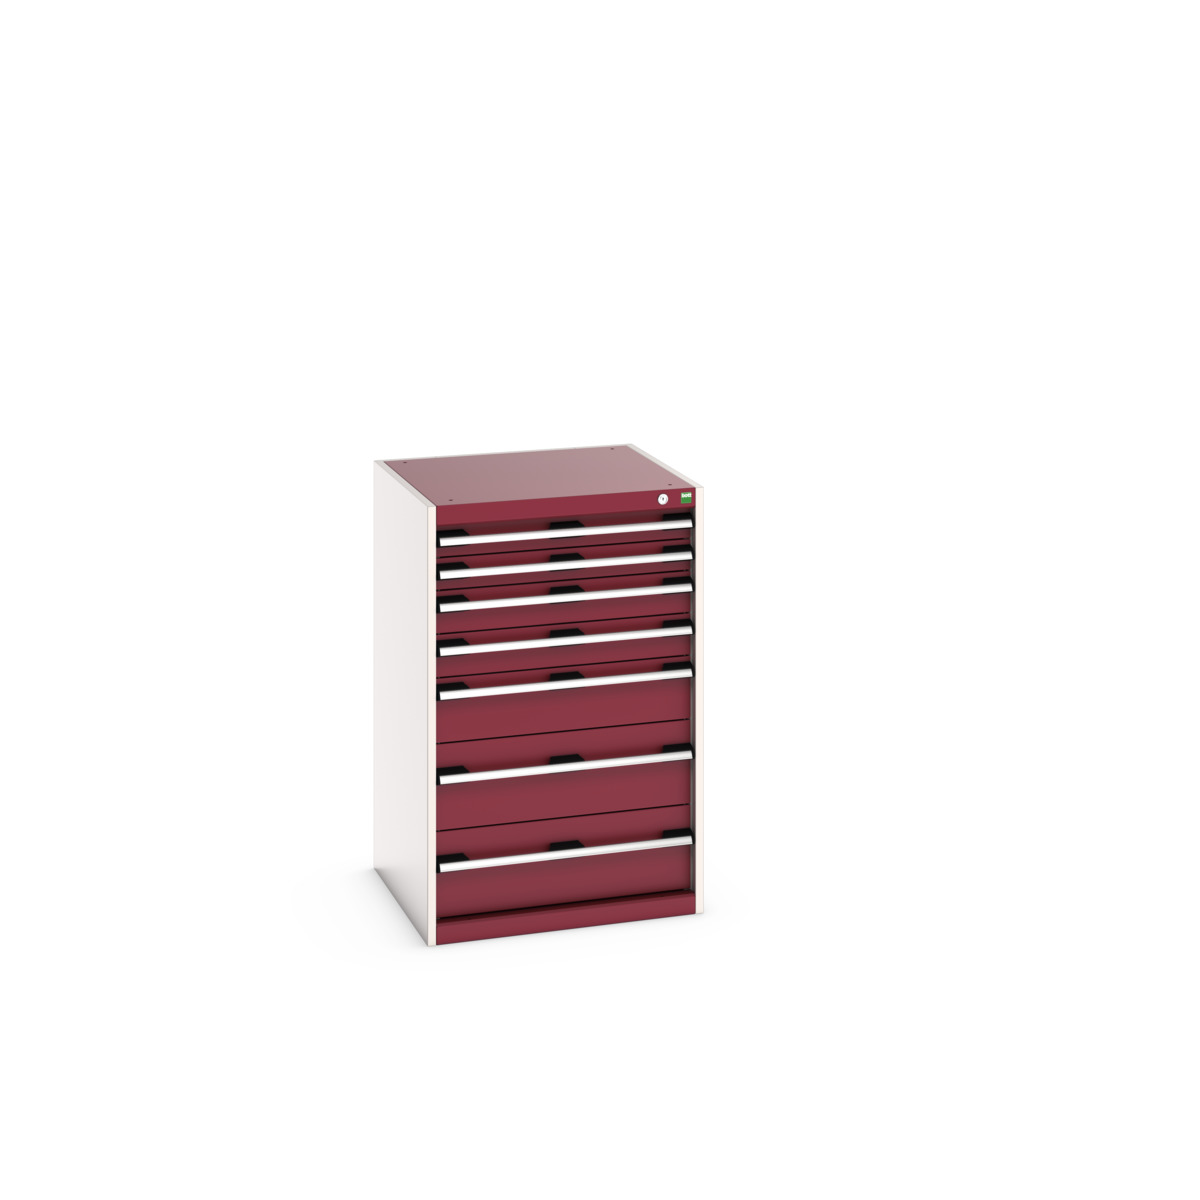 40019063.24V - cubio drawer cabinet